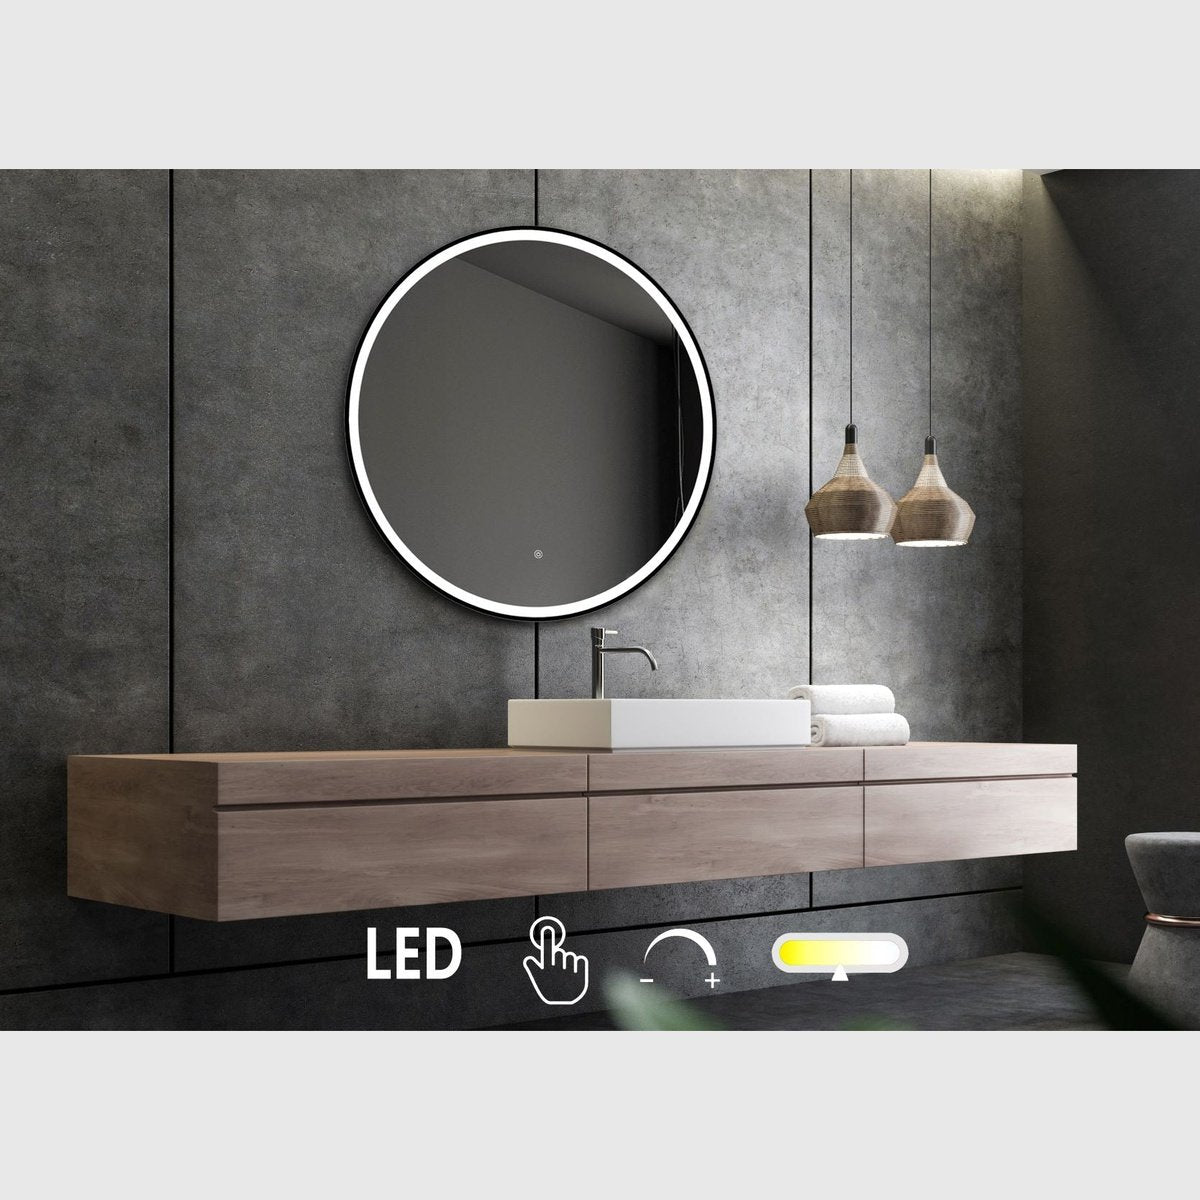 Se Nordic Bad Janni-2 rundt spejl med sort ramme og front belysning - Ø90 hos Bad&Design